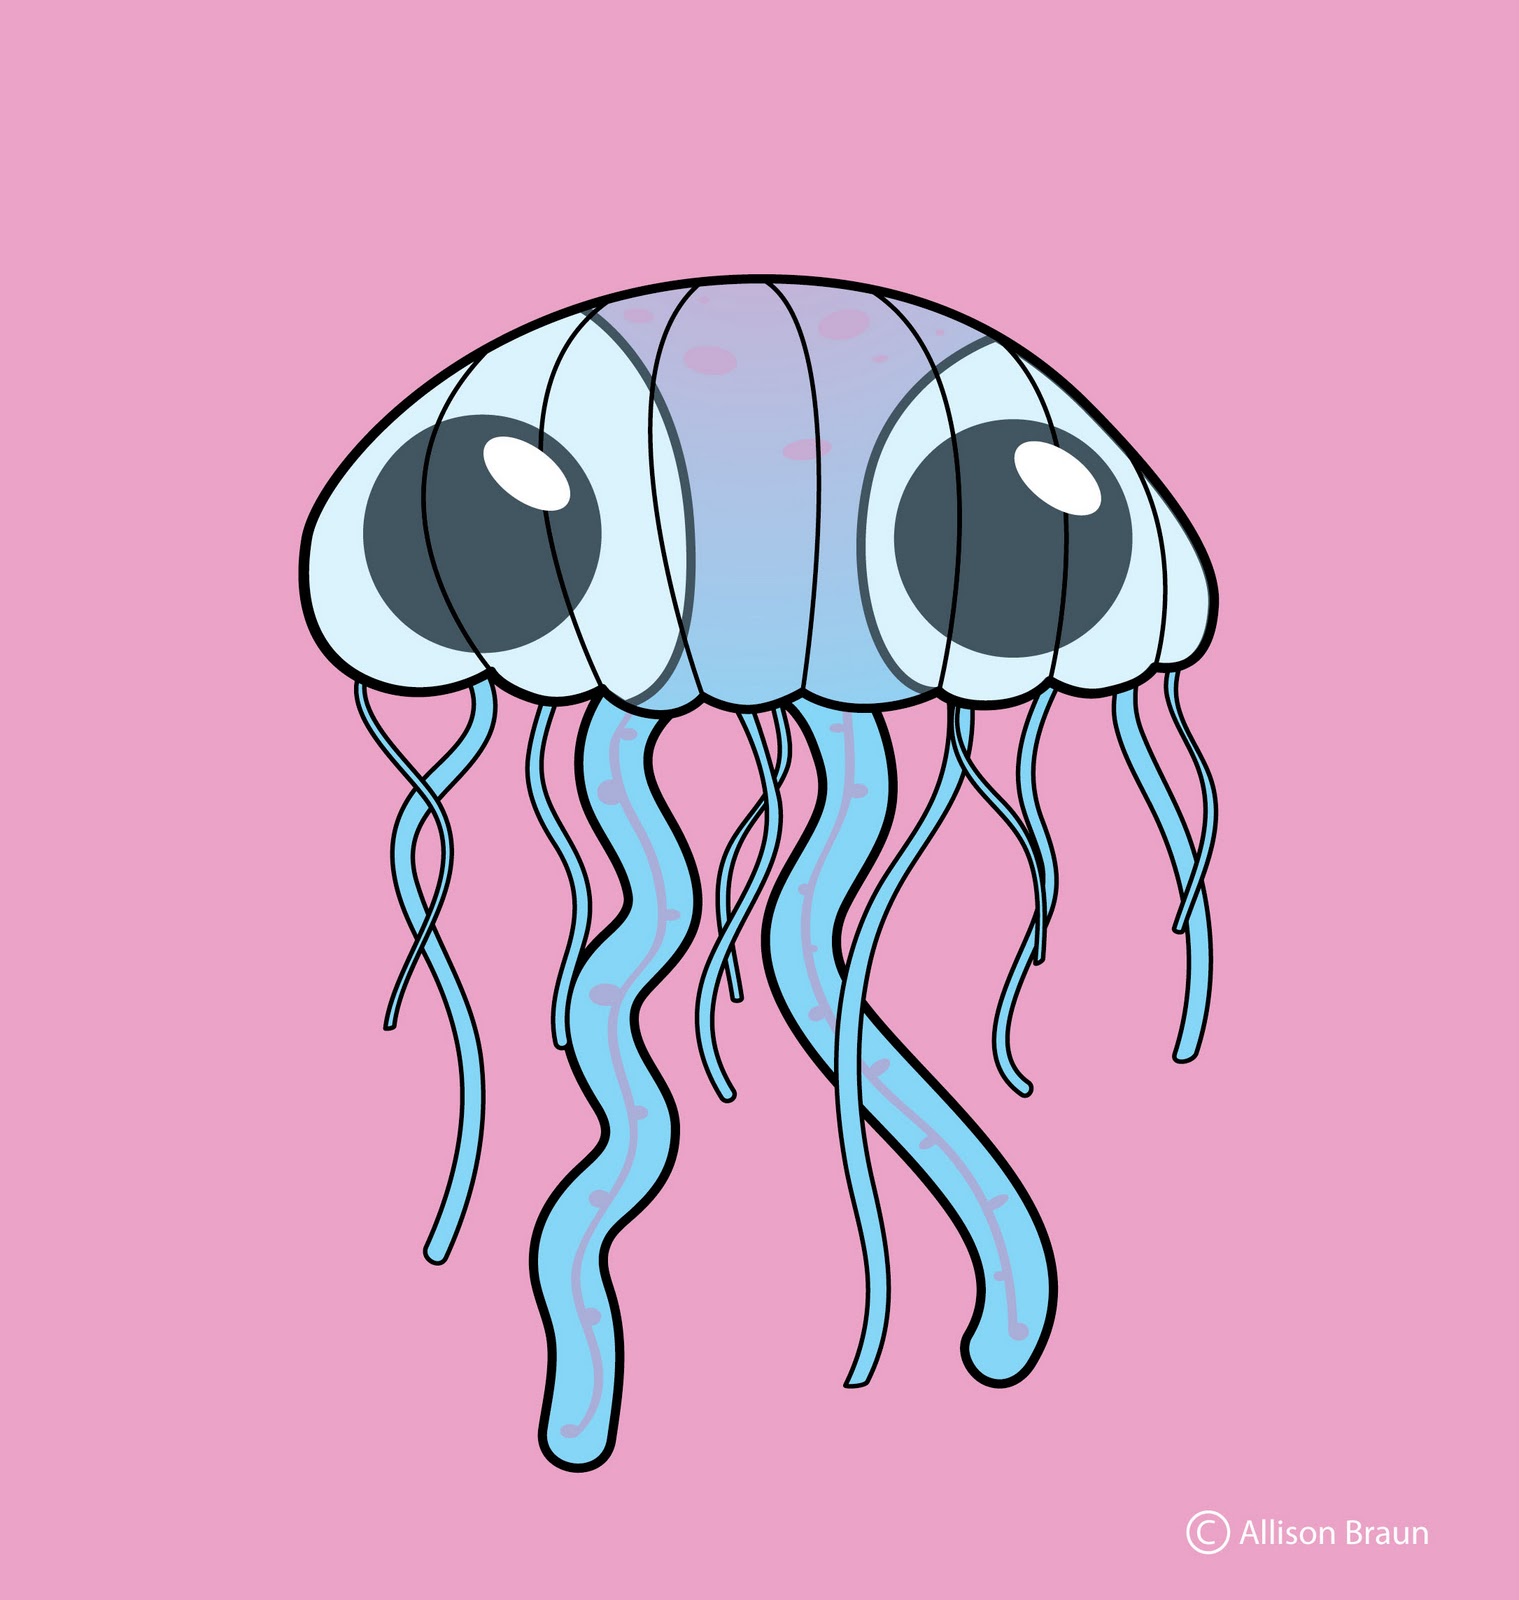 http://2.bp.blogspot.com/-pW4tQi39KHM/TZJqfzSnfiI/AAAAAAAAAIc/m4D0S3siPcU/s1600/jellyfish.jpg